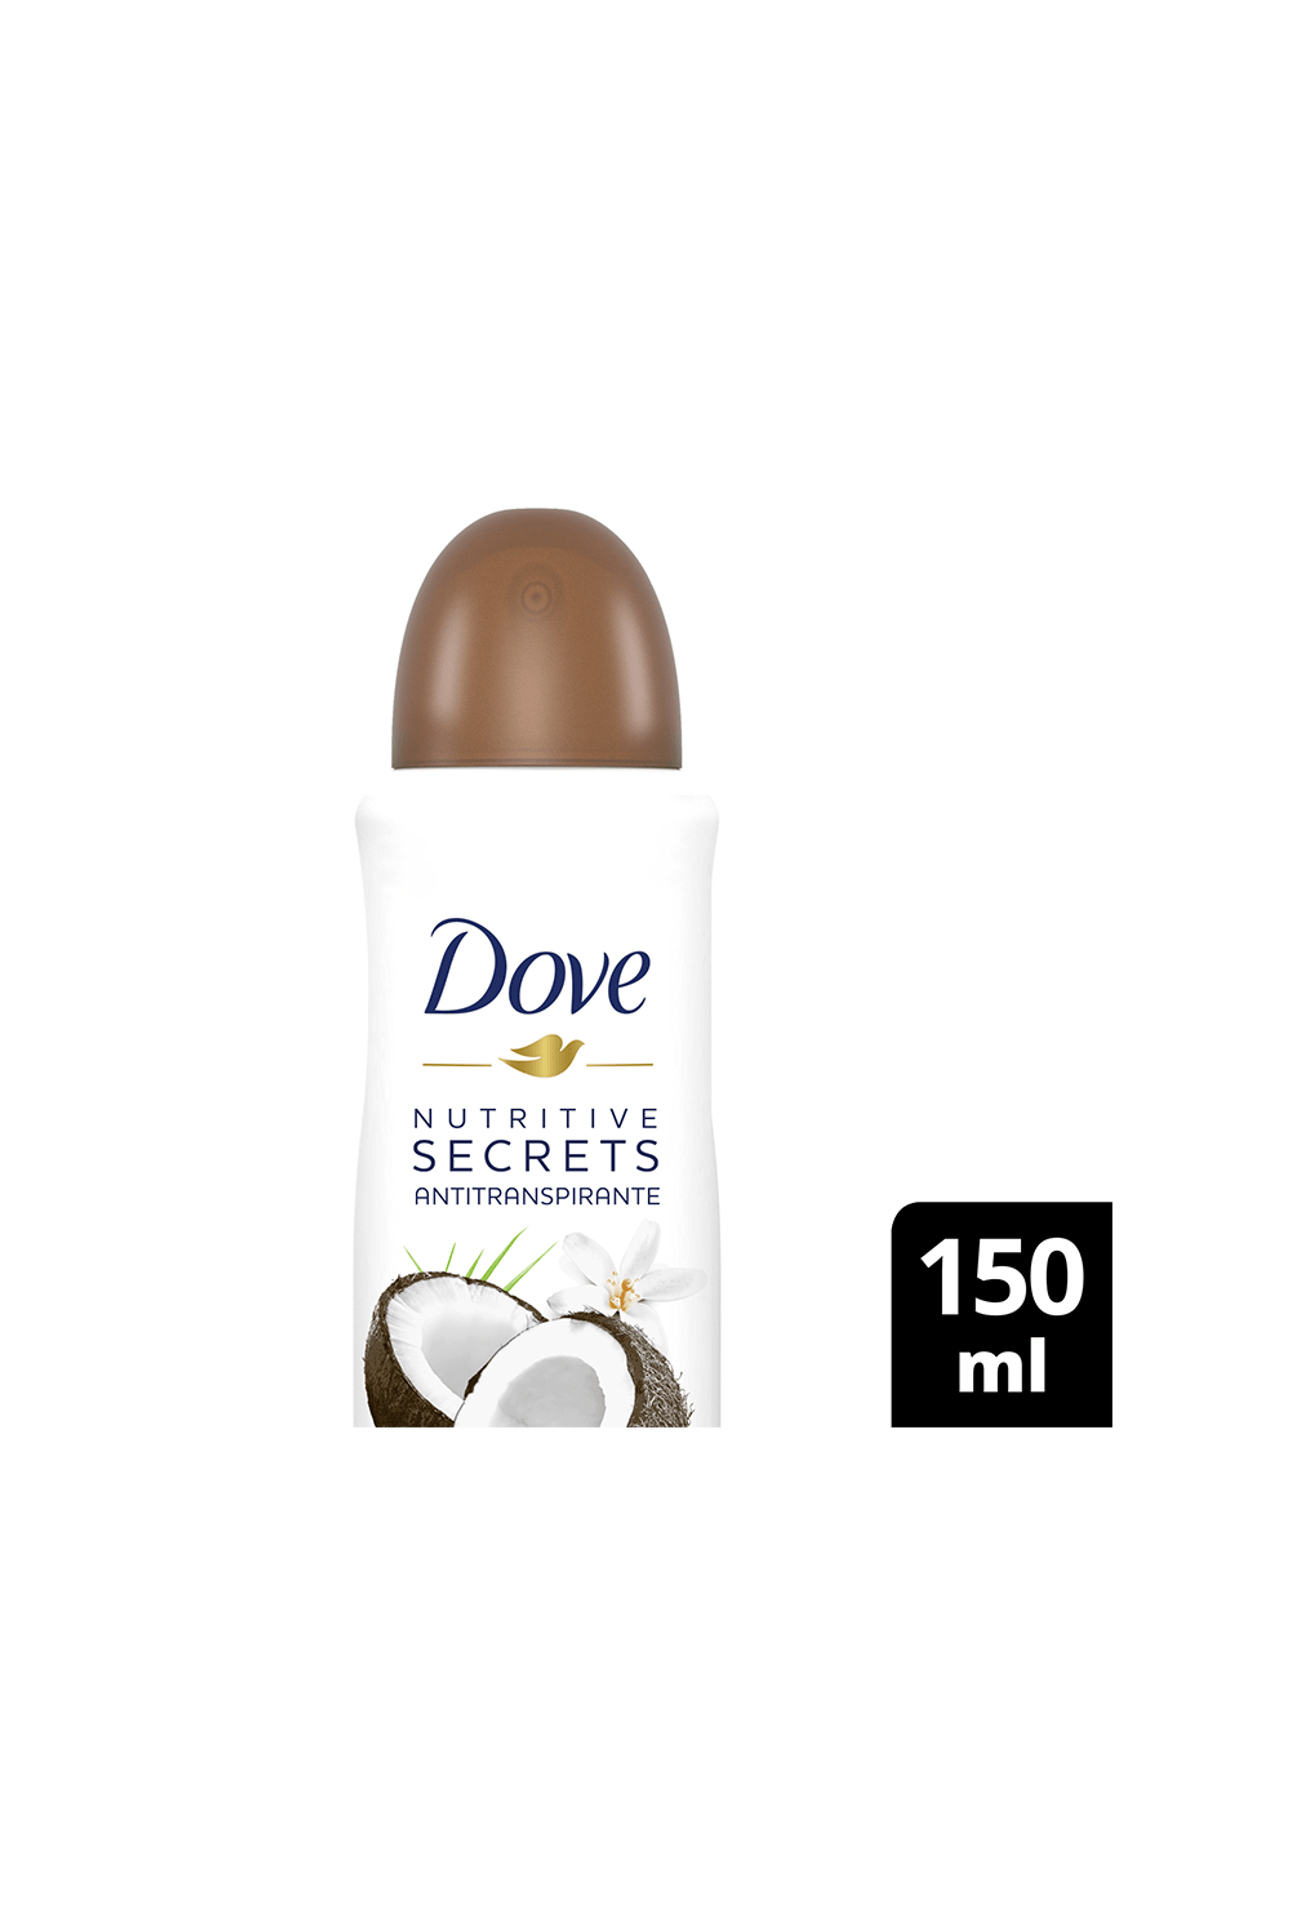 Dove-Antitranspirante-Dove-Coco-x-150ml-7791293048512_img1